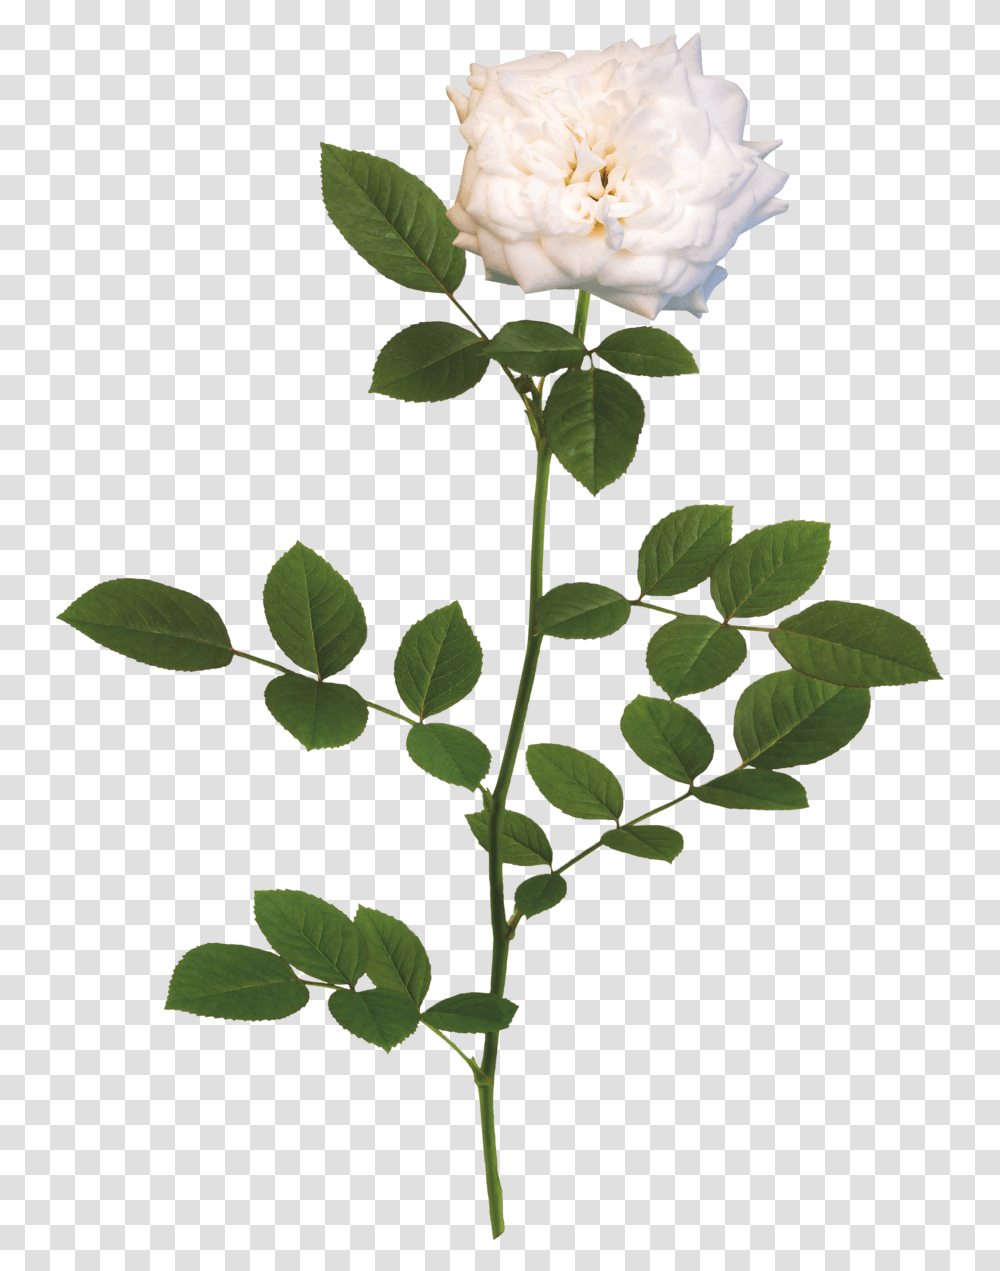 White Flower Rose, Plant, Blossom, Petal, Leaf Transparent Png